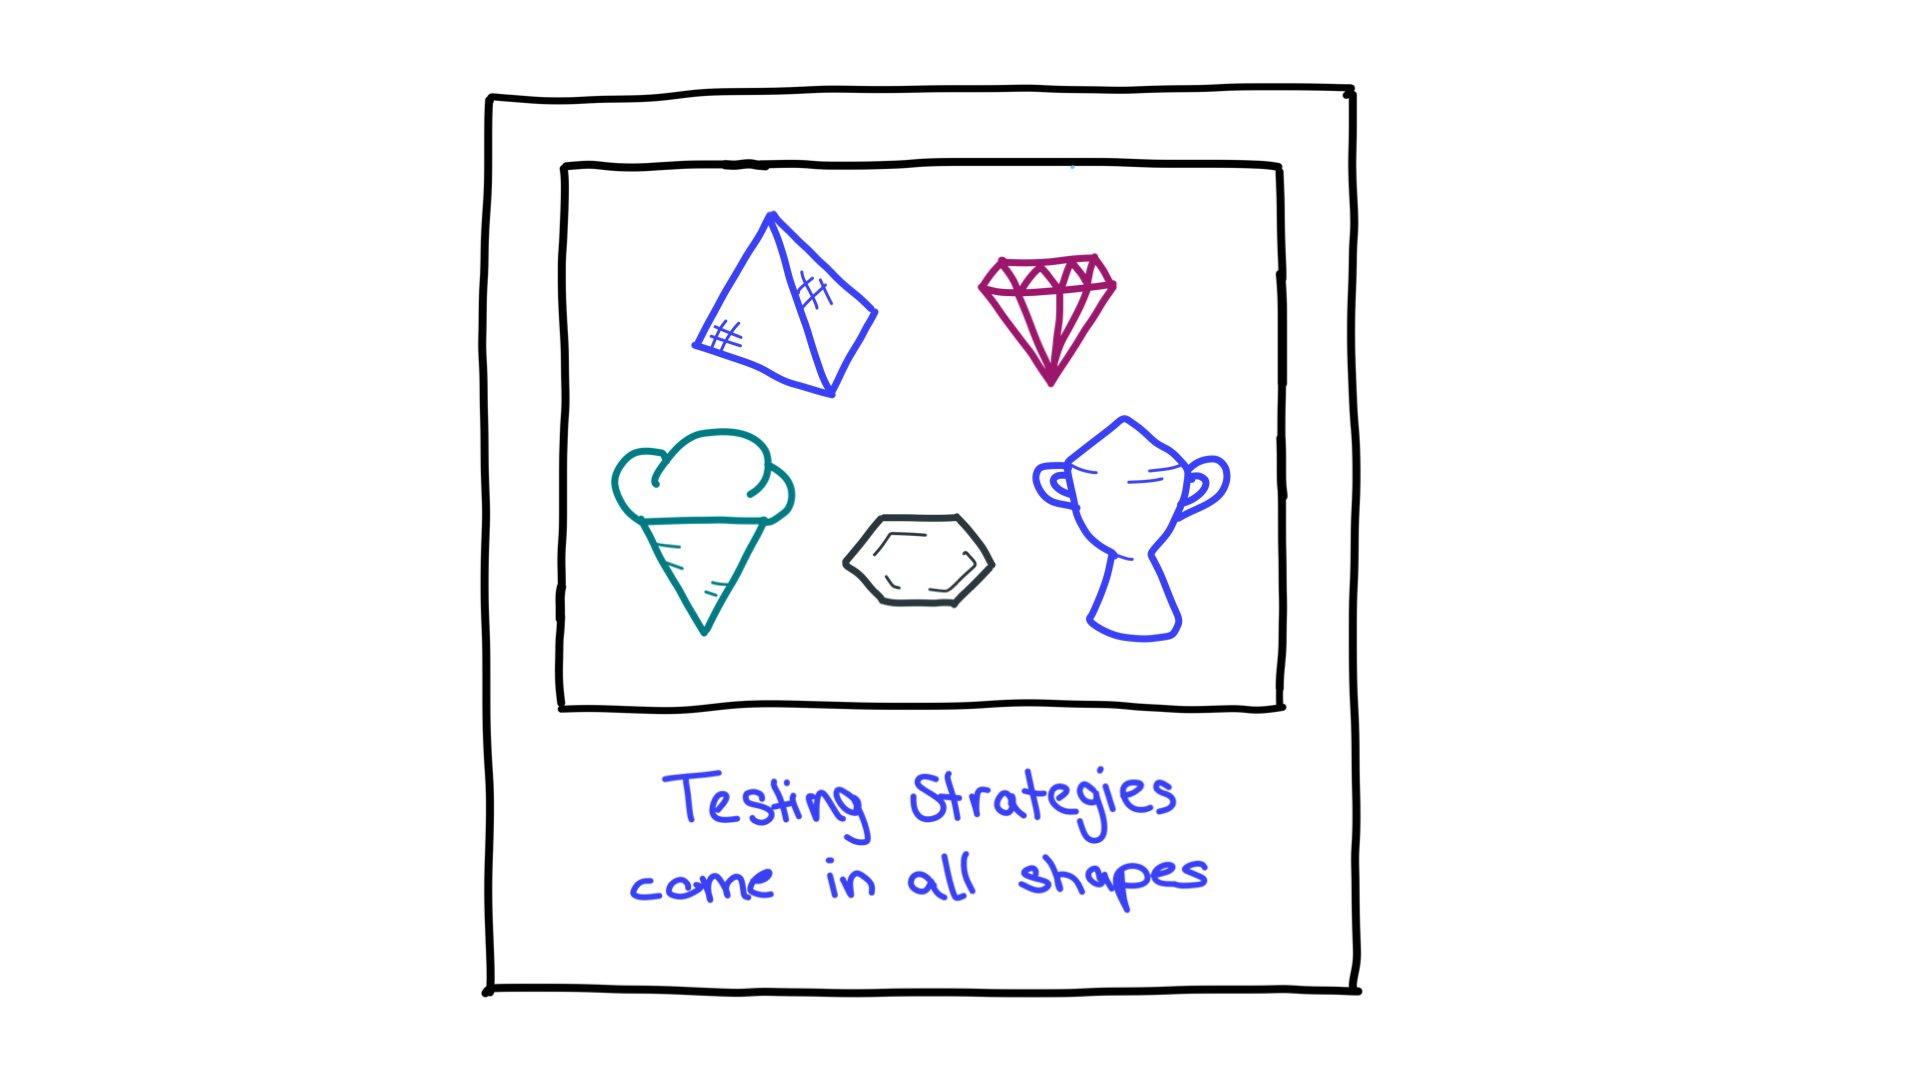 一些测试策略形状的示例：金字塔、切割的钻石、圆筒冰淇淋、六边形和奖杯。